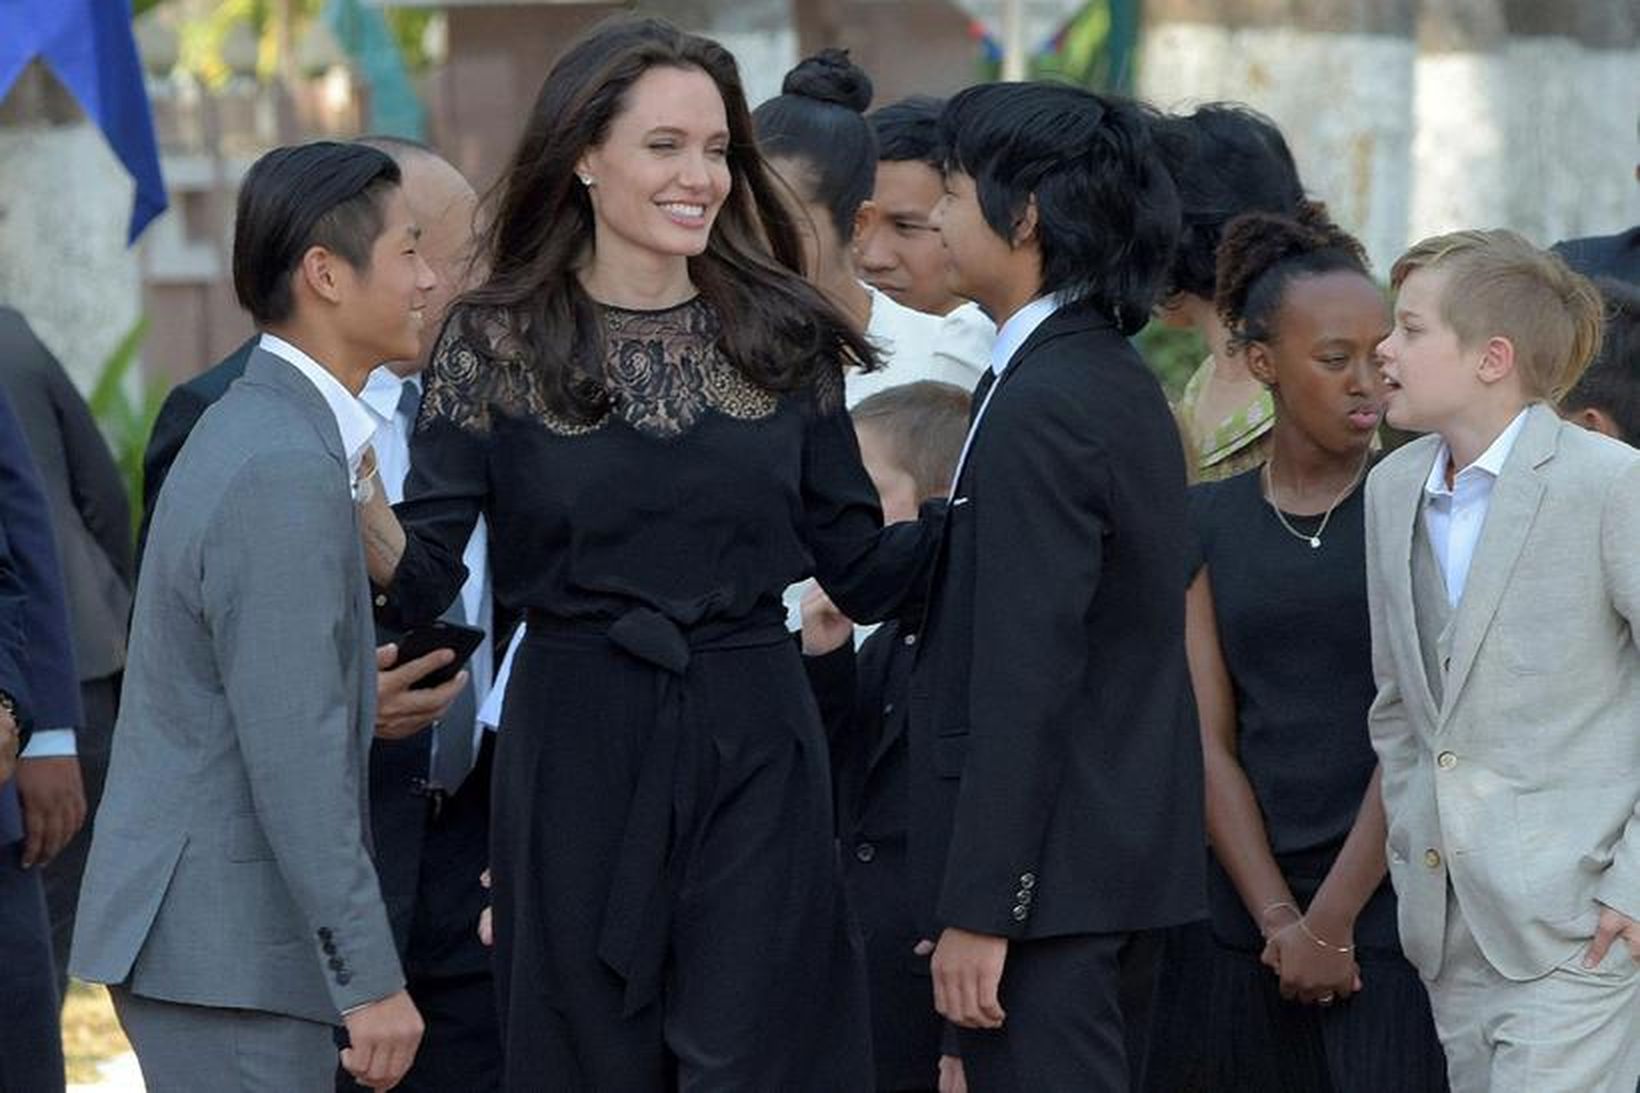 Angelina Jolie ásamt börnum sínum.